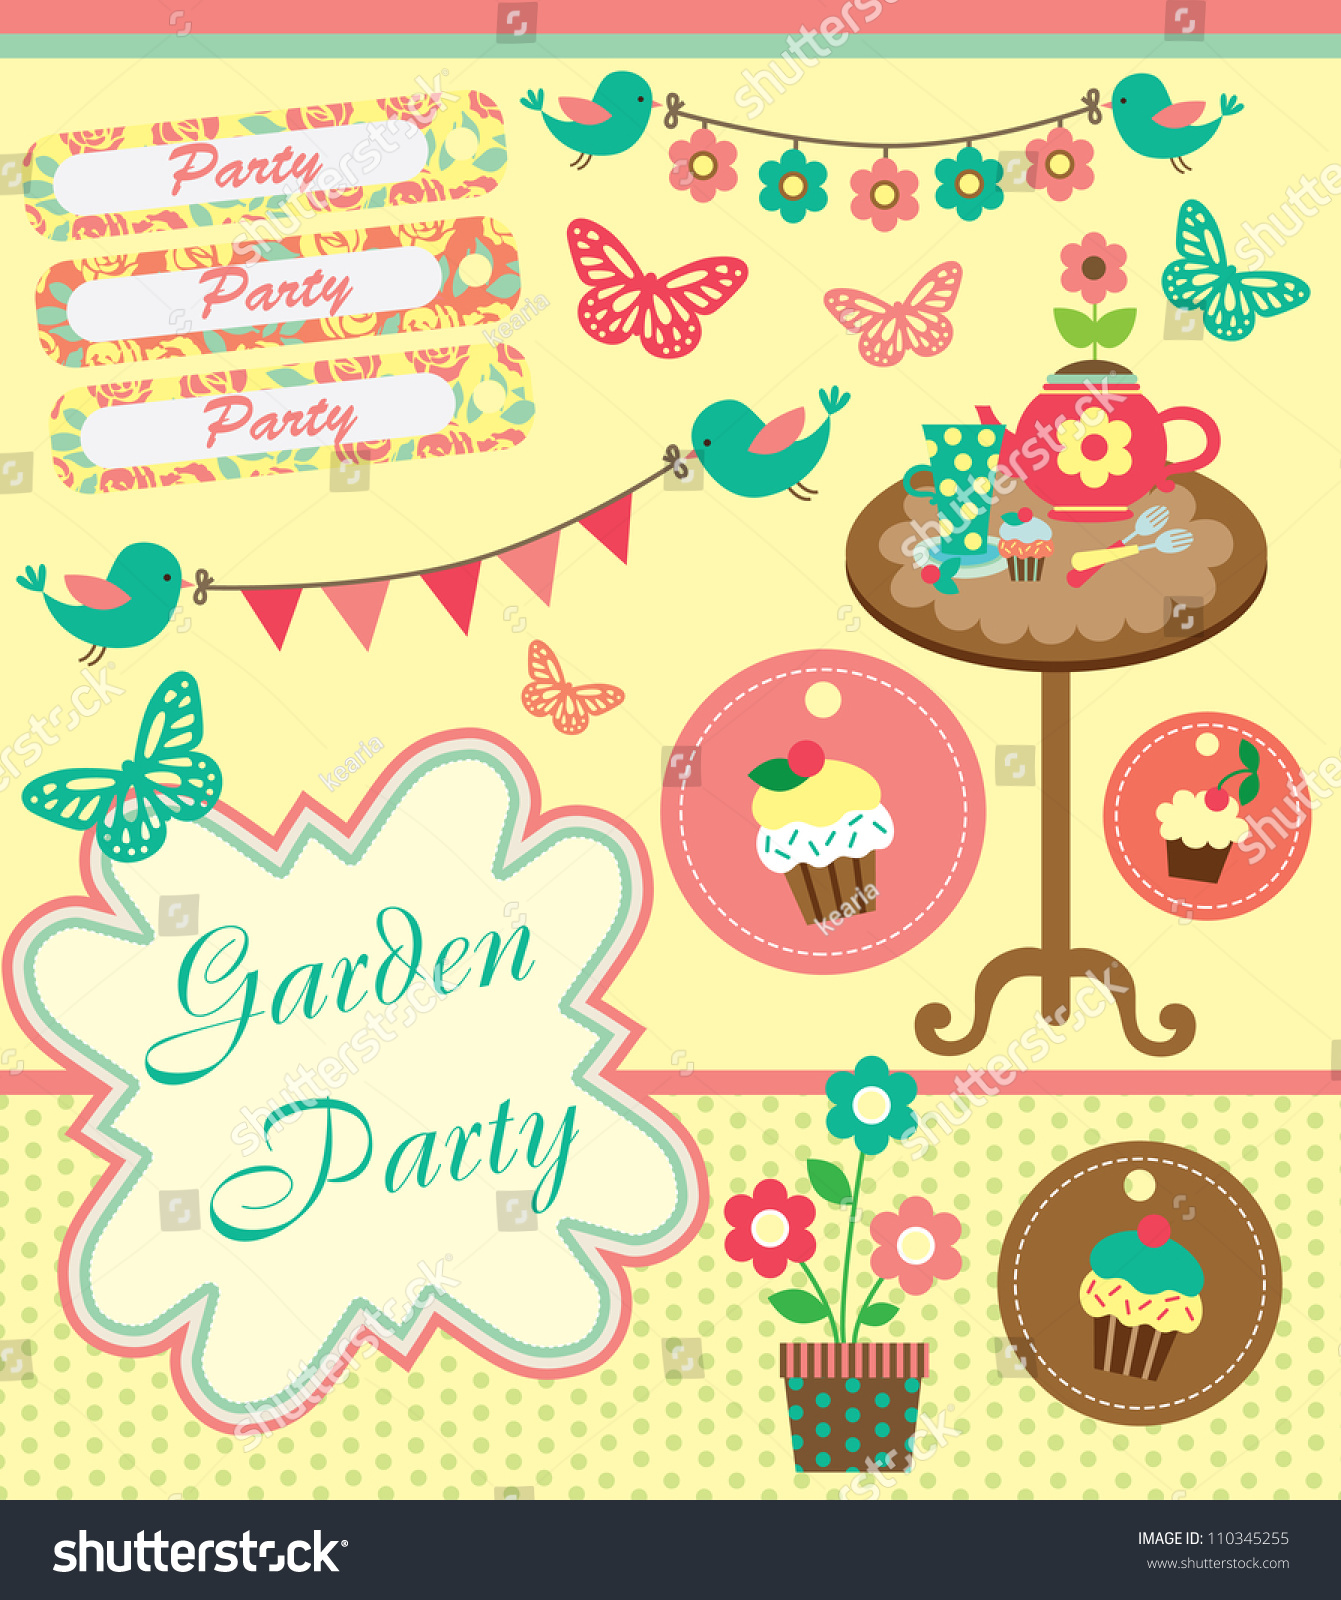 clipart garden party - photo #13